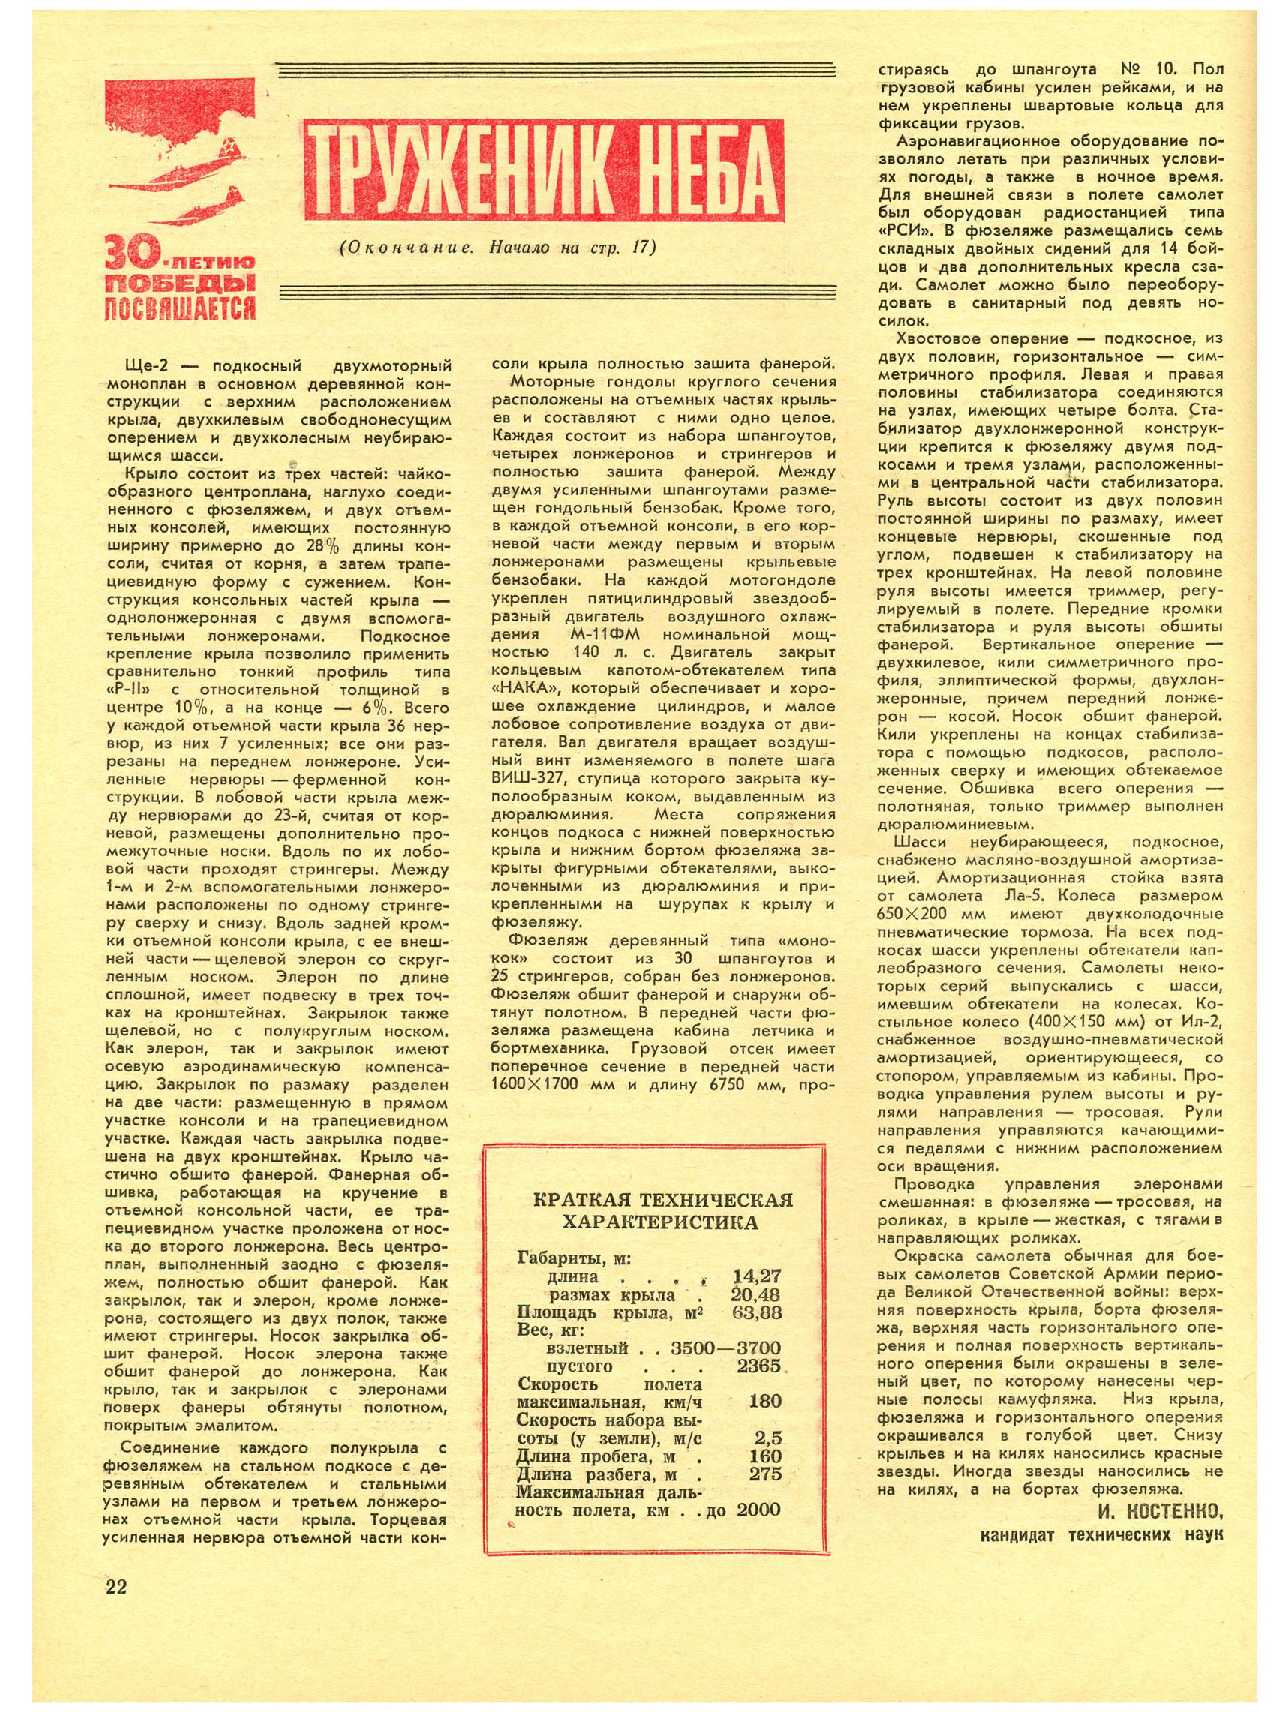 МК 5, 1975, 22 c.